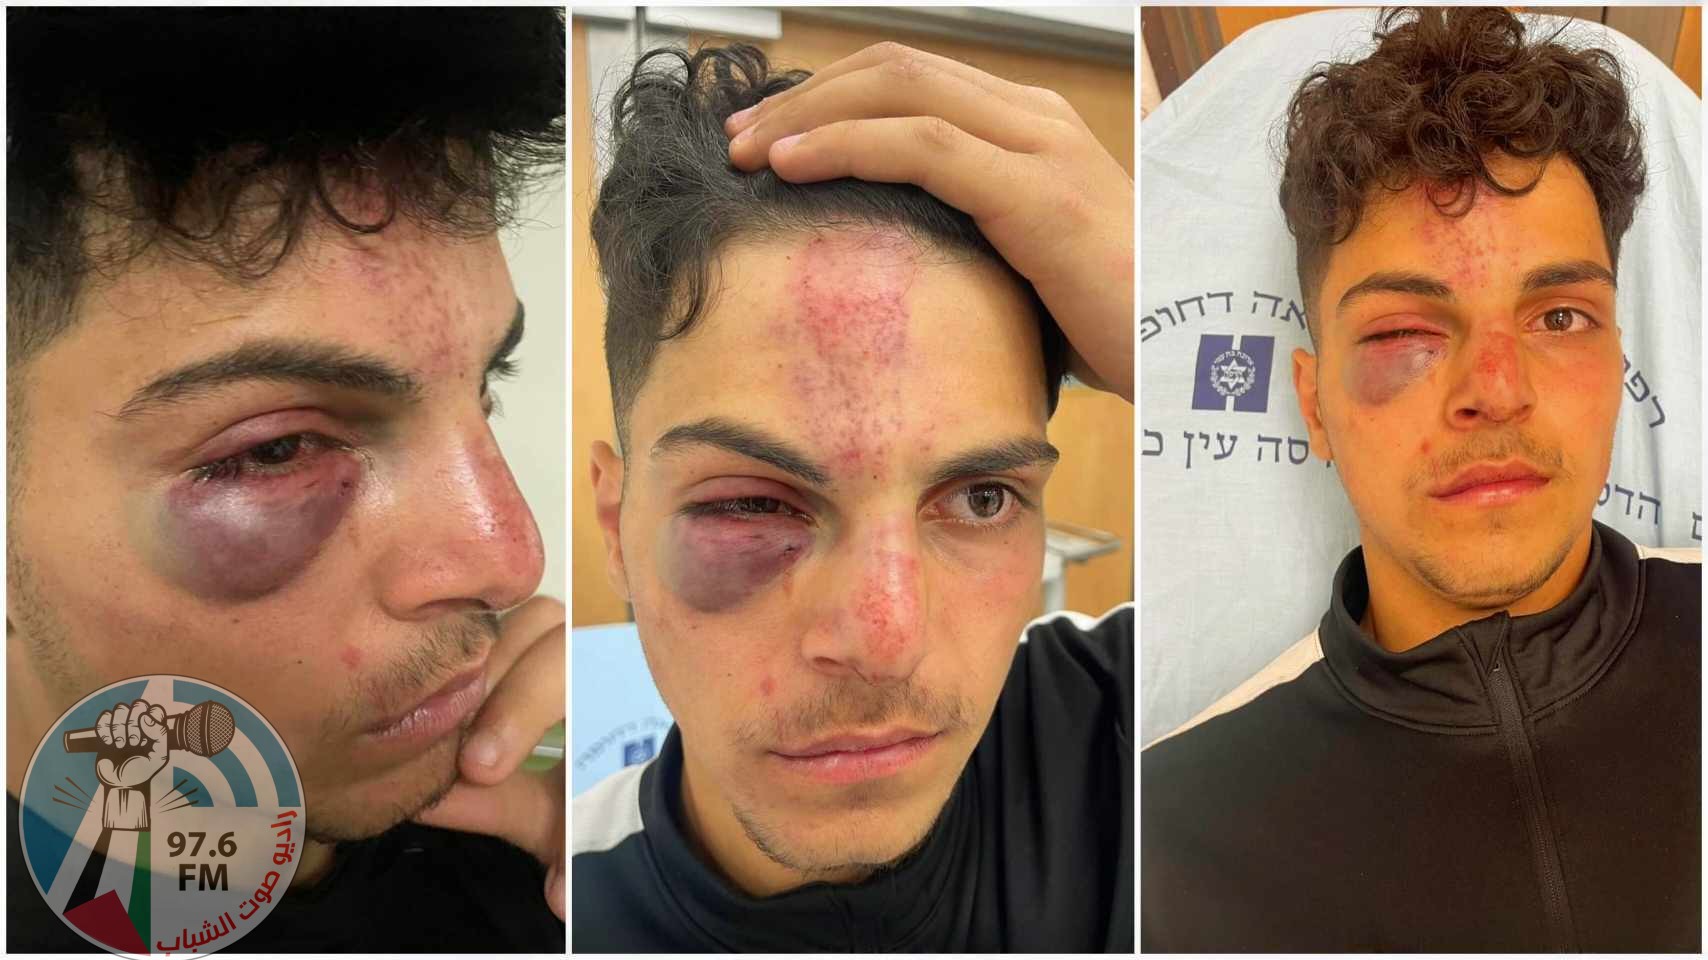 مستوطنون يعتدون بالضرب على فتى في البلدة القديمة من القدس